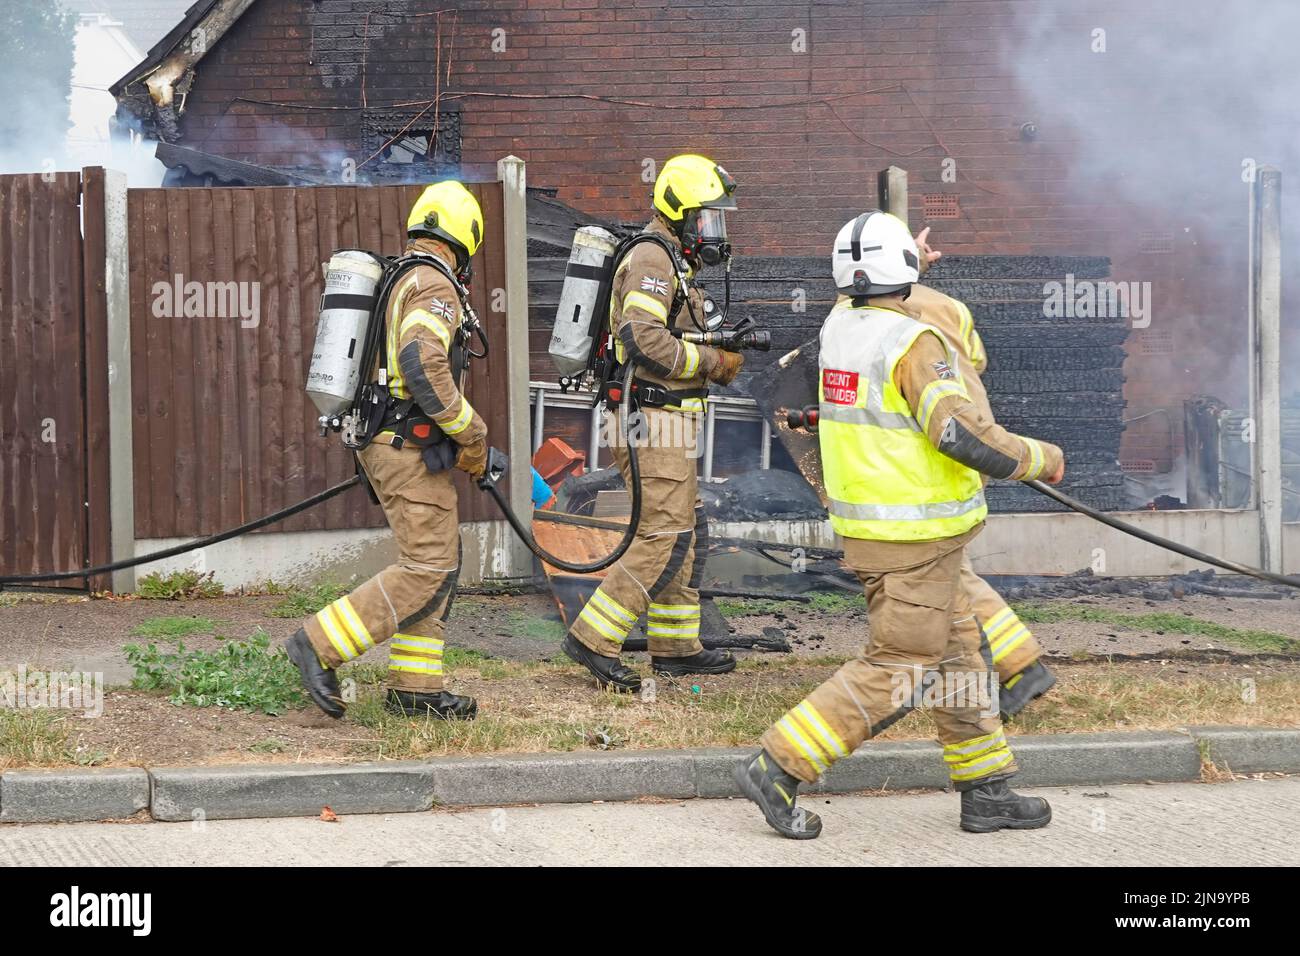 Deux pompiers pompiers vêtements de protection et appareils respiratoires sur le point de chercher à l'intérieur de la maison de combustion bâtiment Angleterre Royaume-Uni Banque D'Images